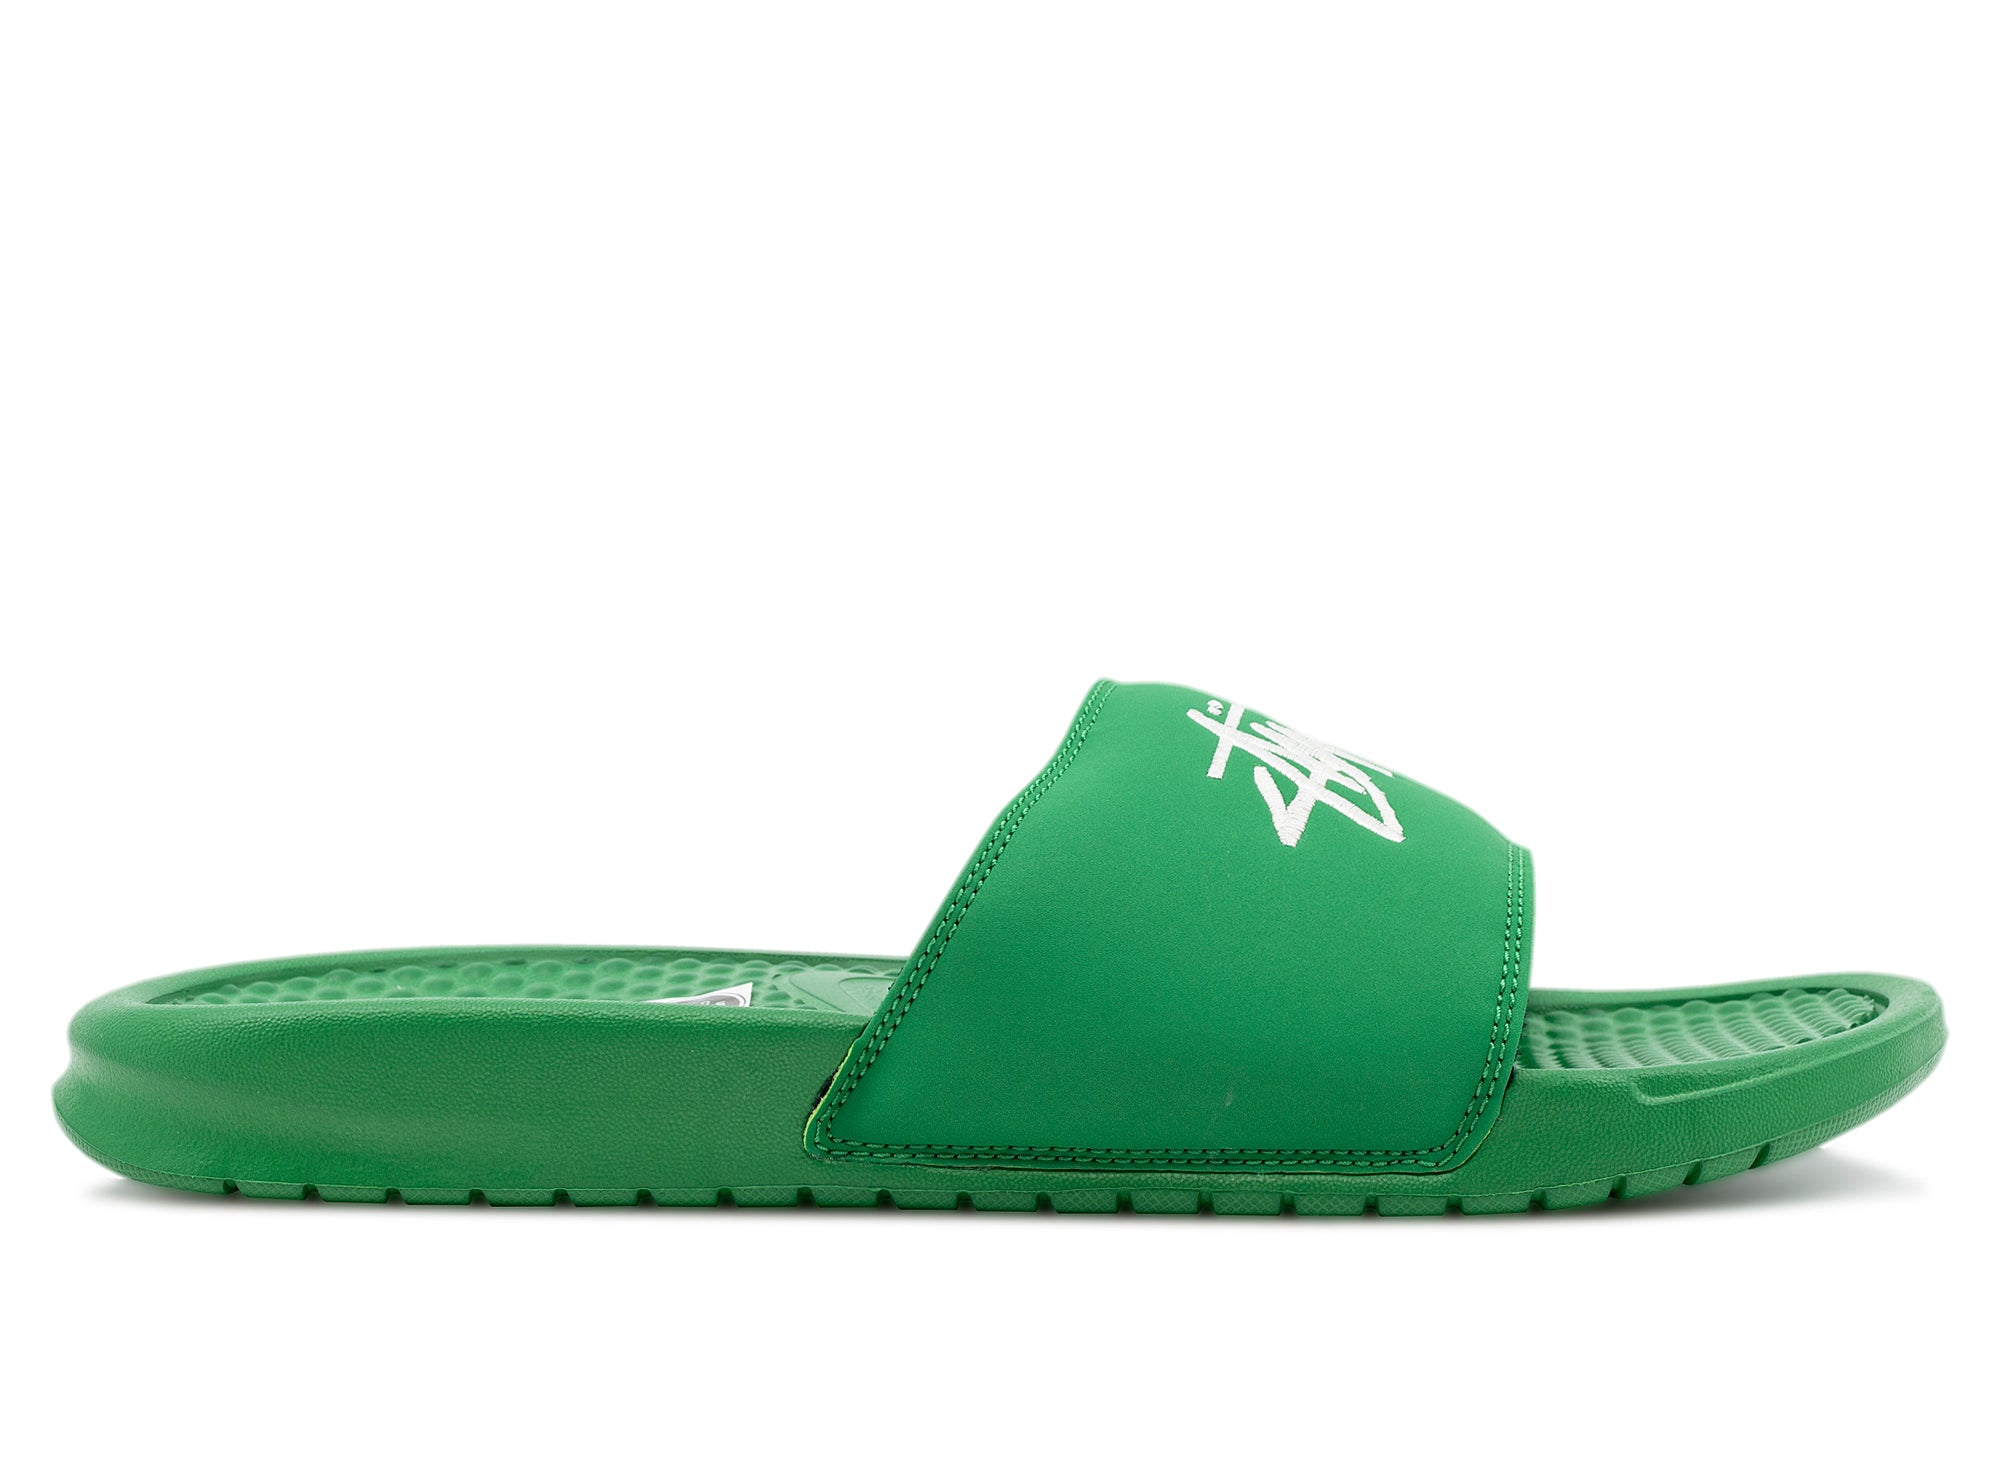 green nike sandals